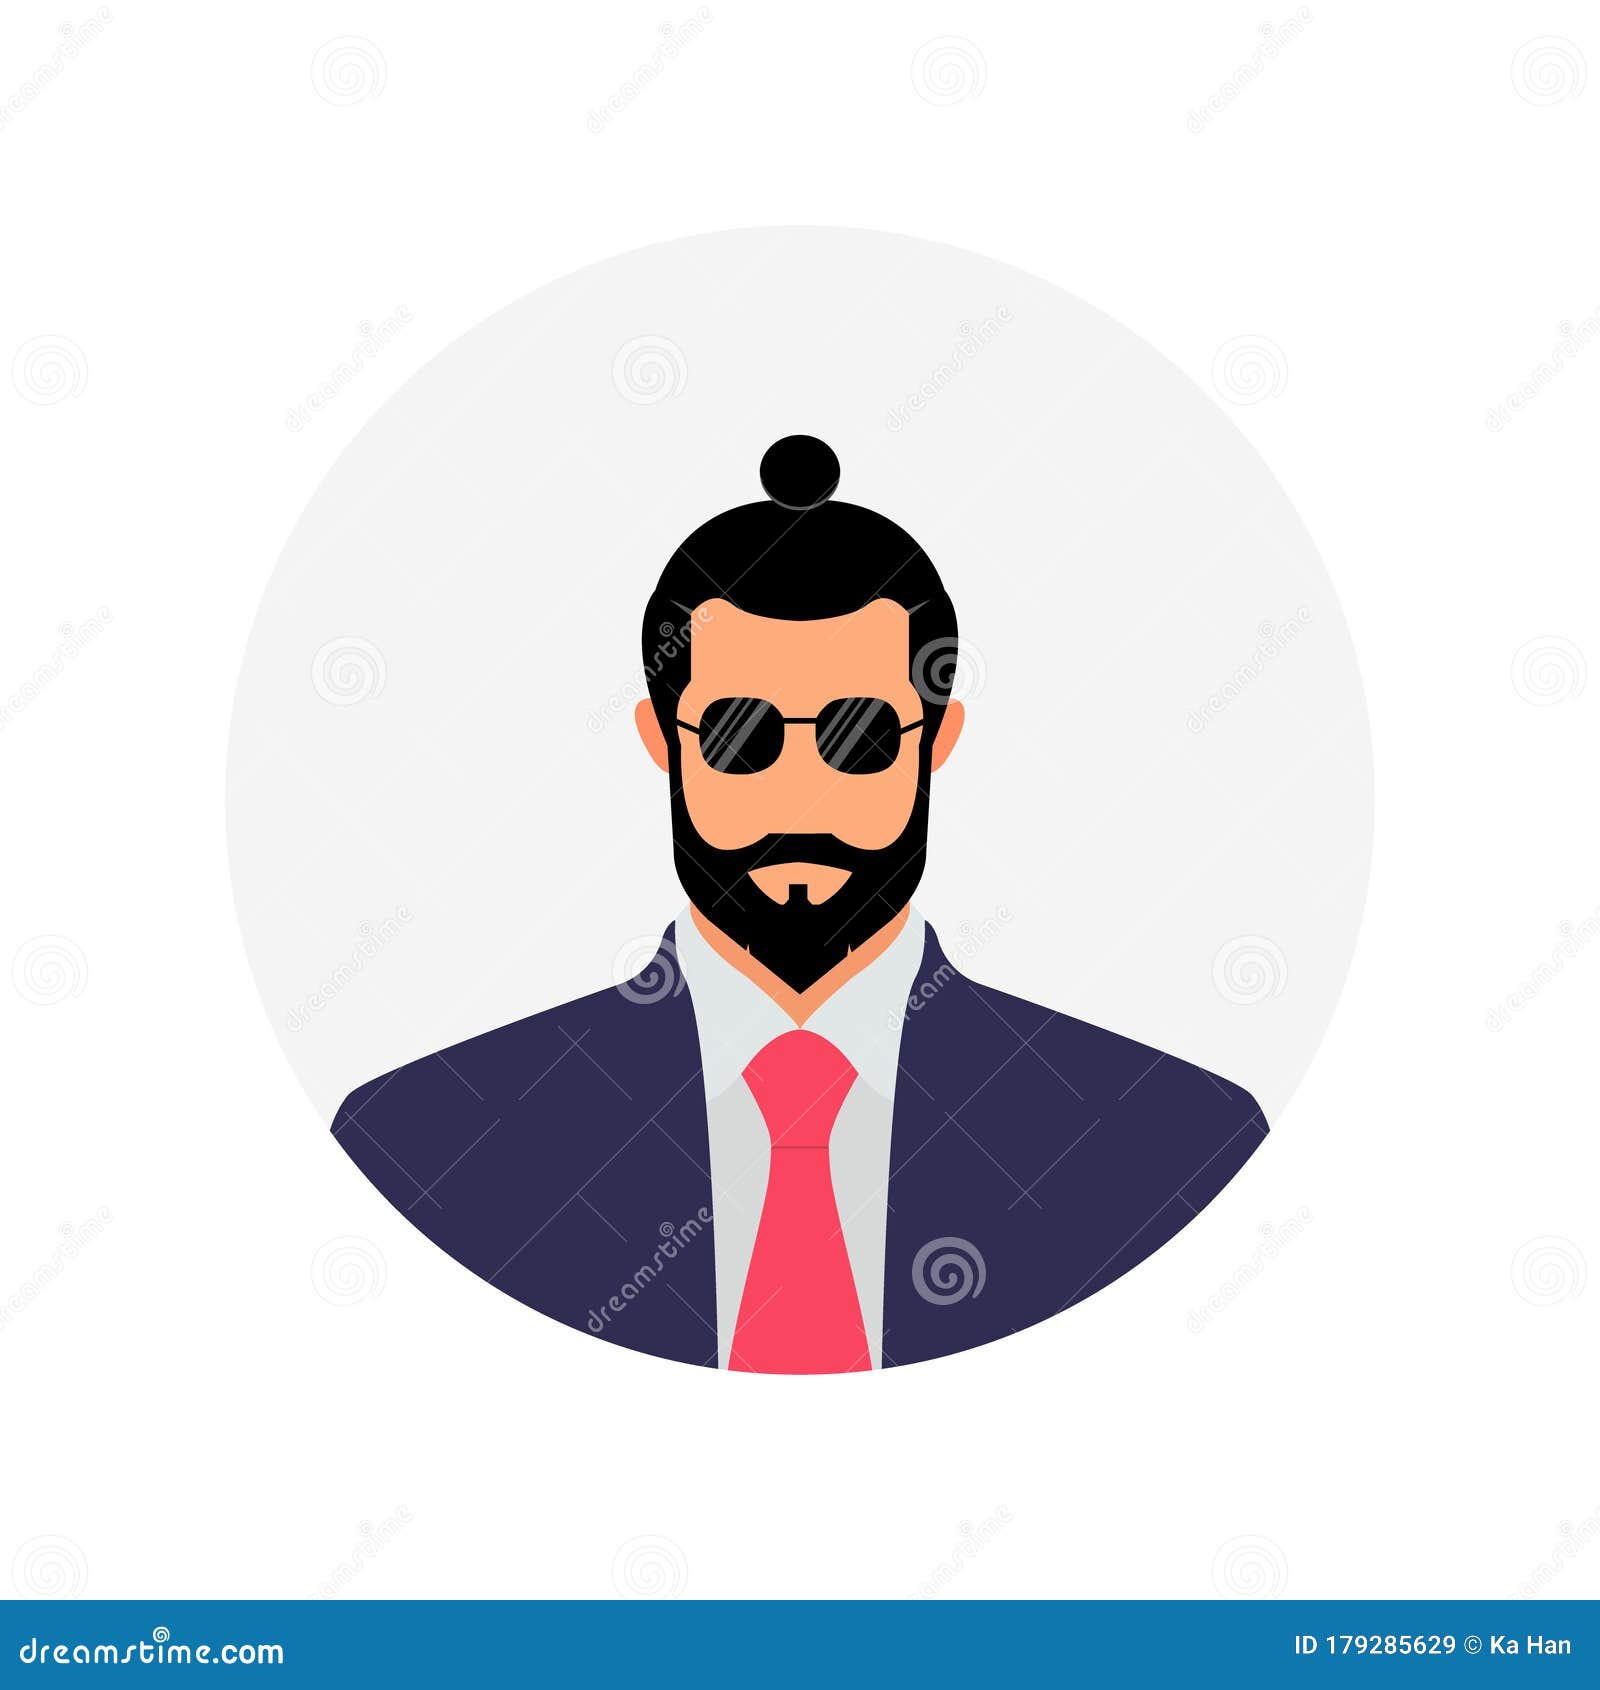 Những hình đại diện phẳng nam có râu hoặc hình đại diện nhân vật doanh nhân sẽ thể hiện sự thành công và quyền lực của bạn. Hãy xem hình ảnh để khám phá thế giới của những người đàn ông ưa thích phong cách này.